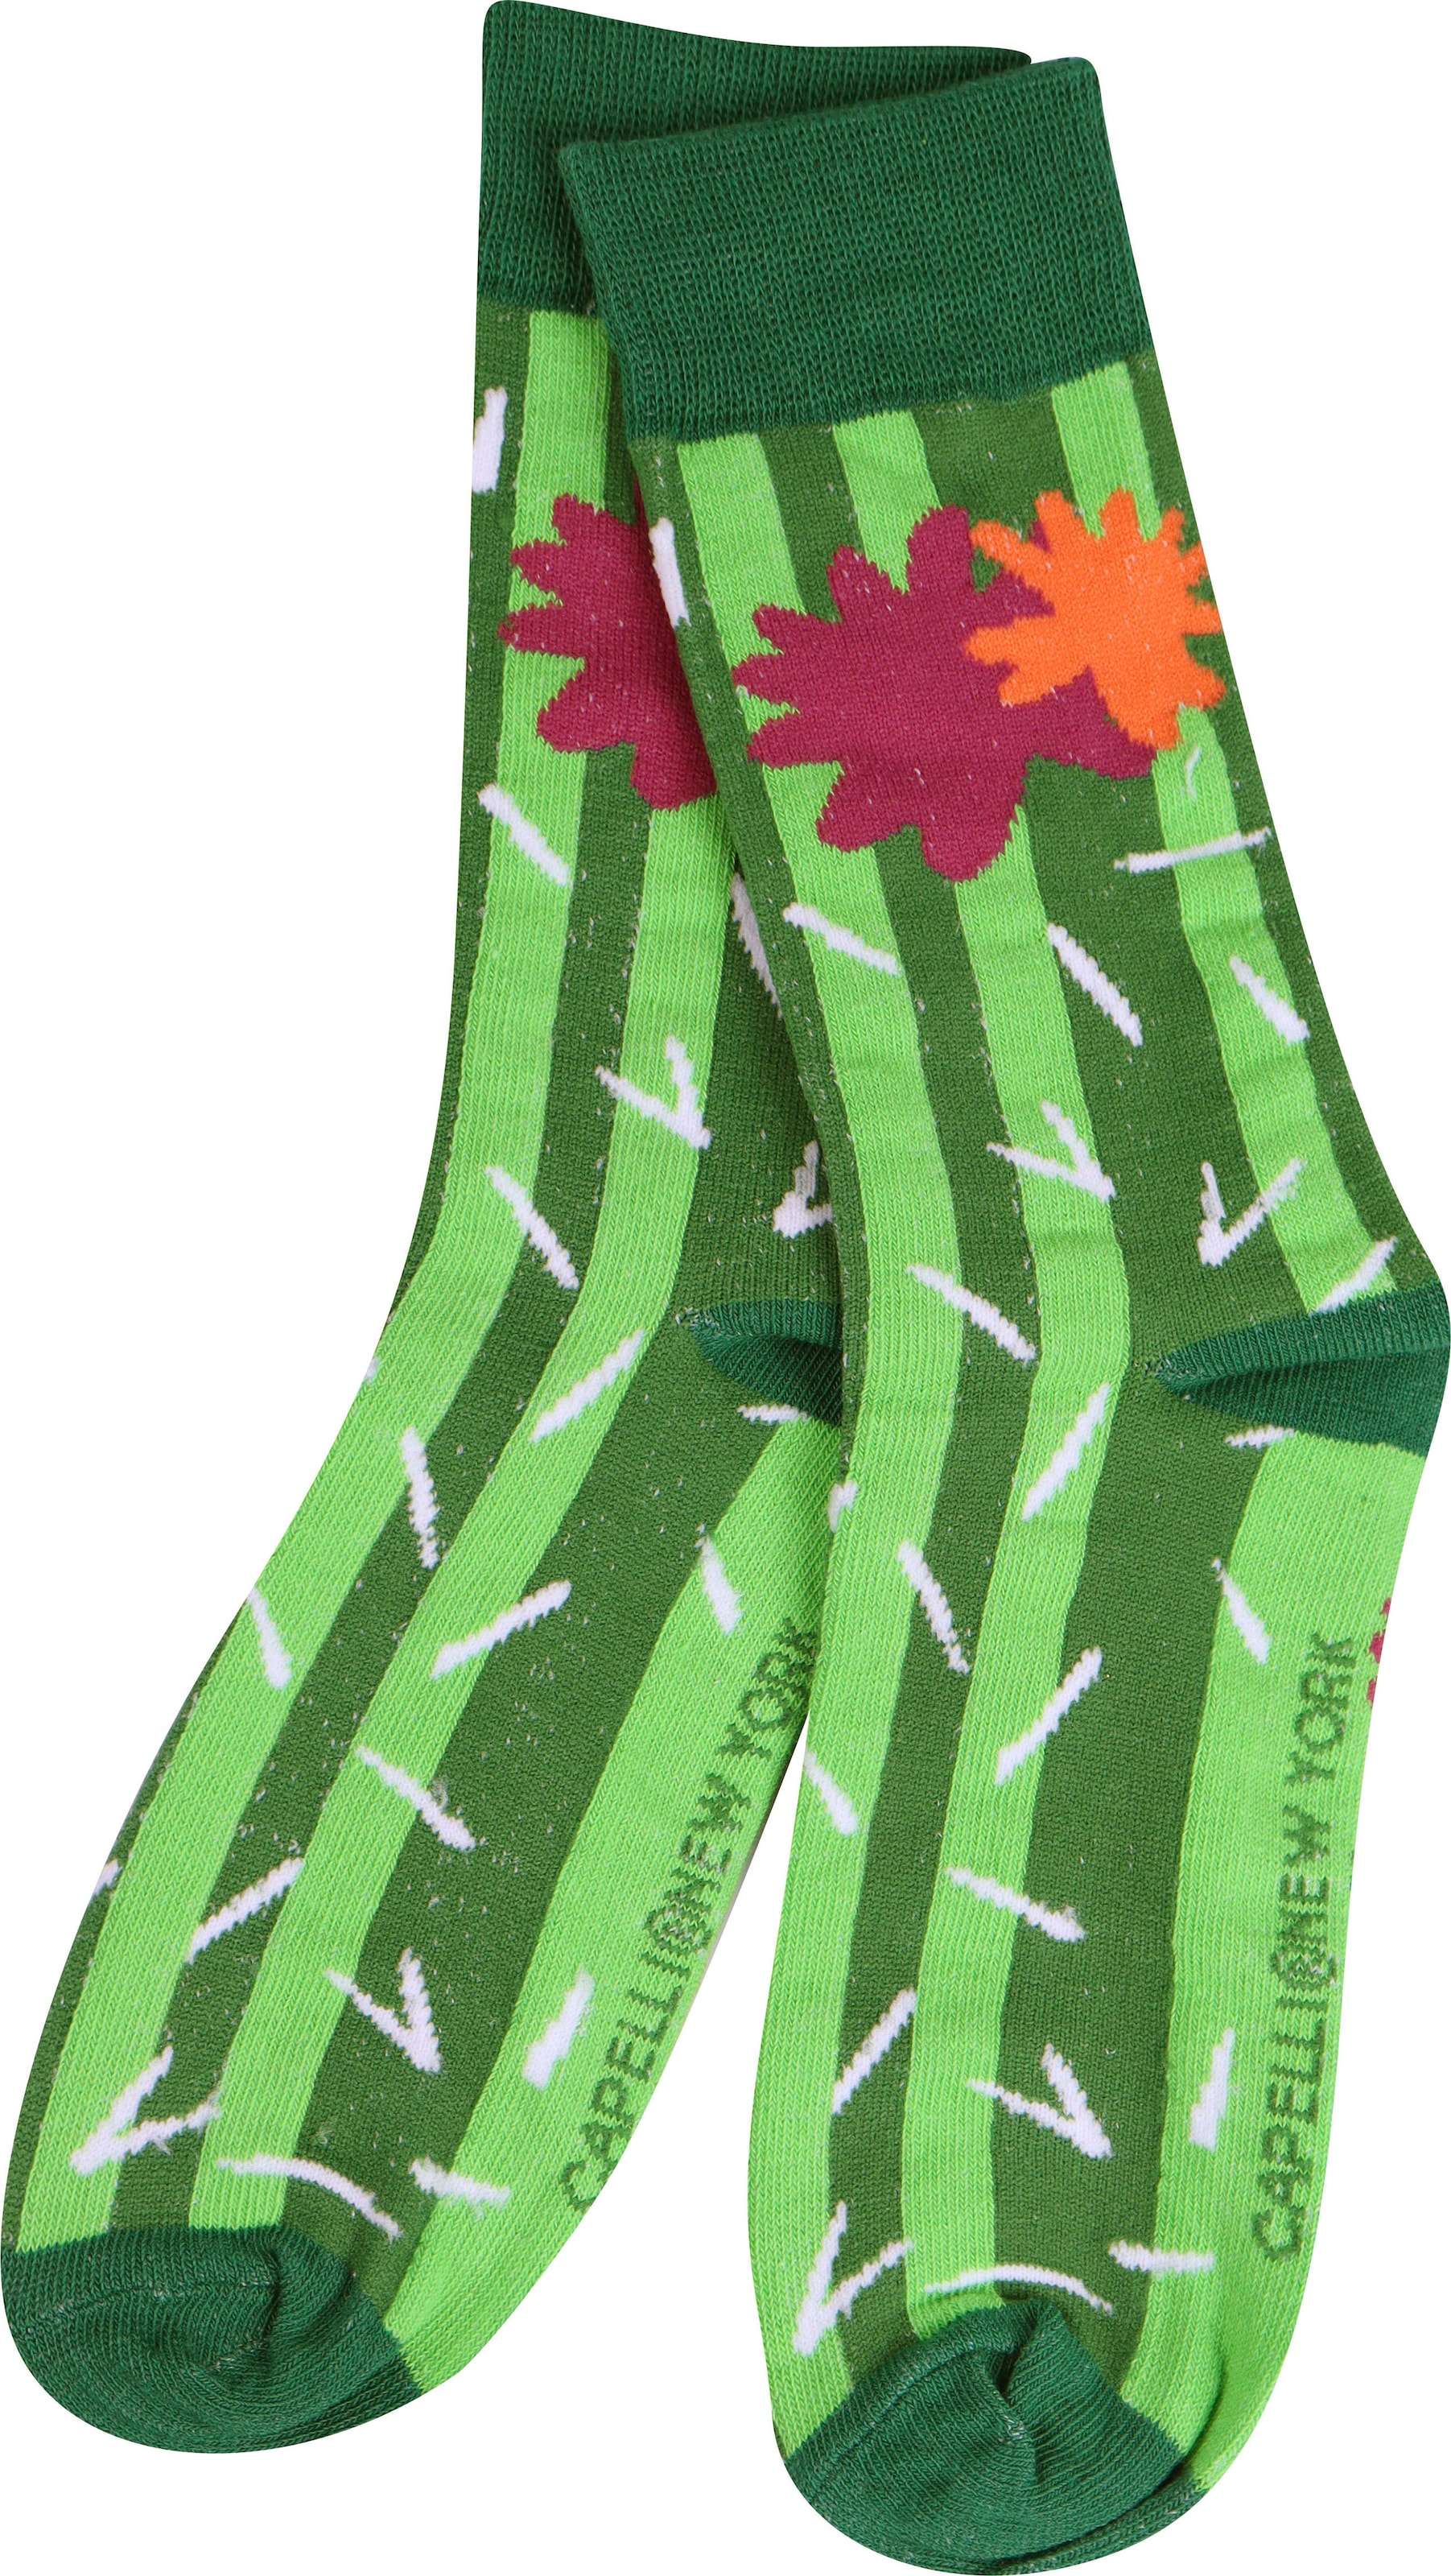 New York lustigem Paar), 3 Design mit Socken, Capelli (Packung, gleich